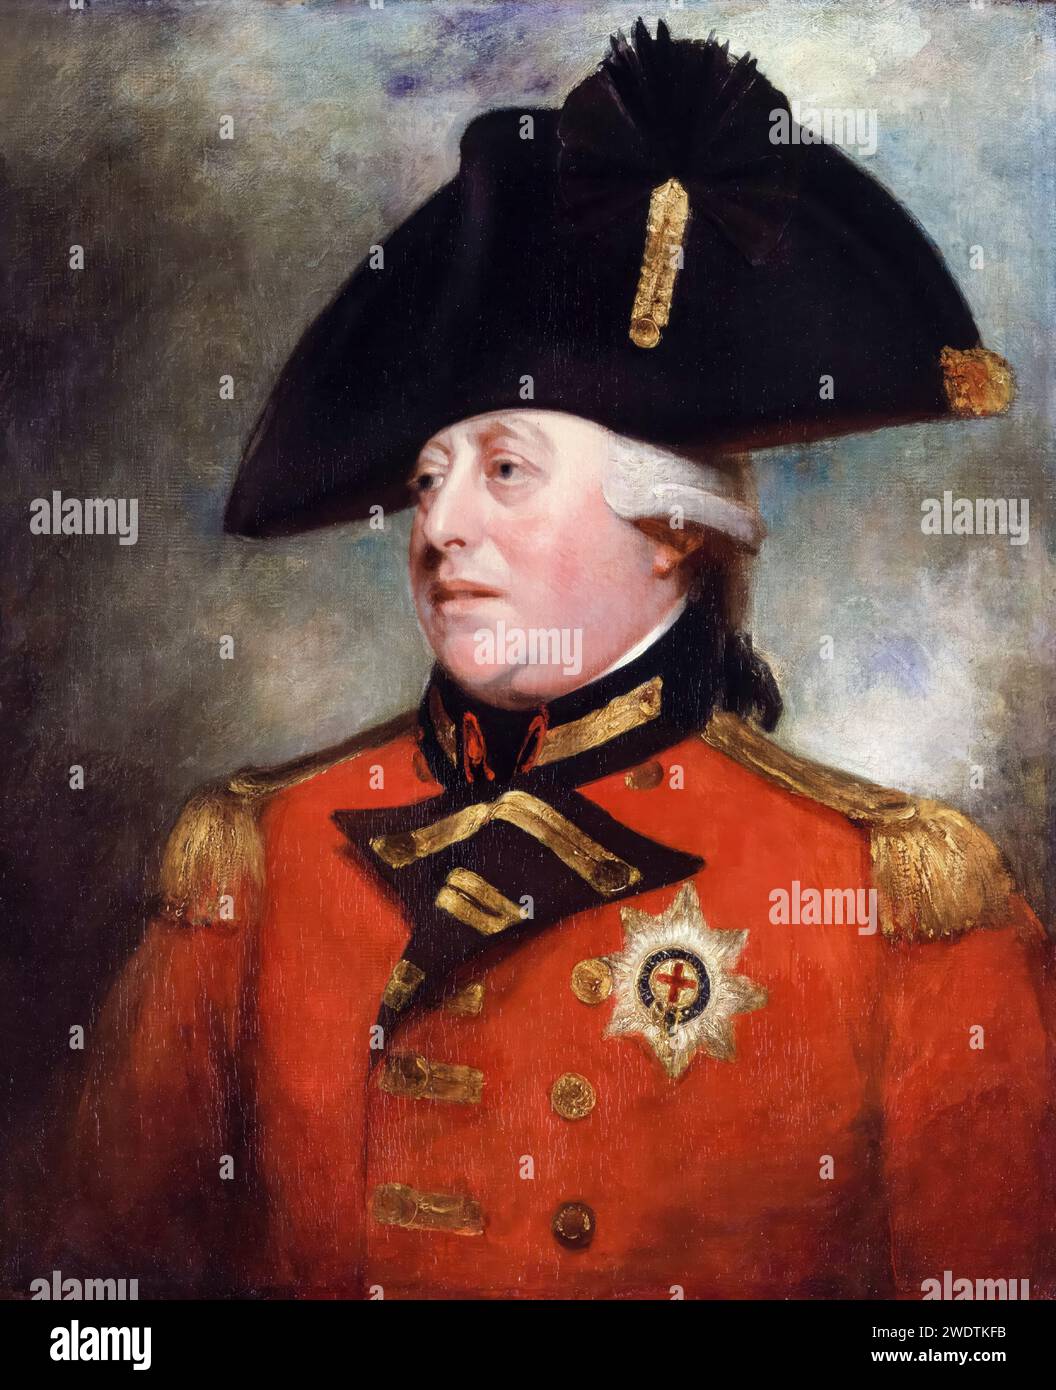 George III (1738-1820), roi de Grande-Bretagne et d'Irlande en uniforme militaire, portrait à l'huile sur toile par l'atelier de William Beechey, vers 1800 Banque D'Images